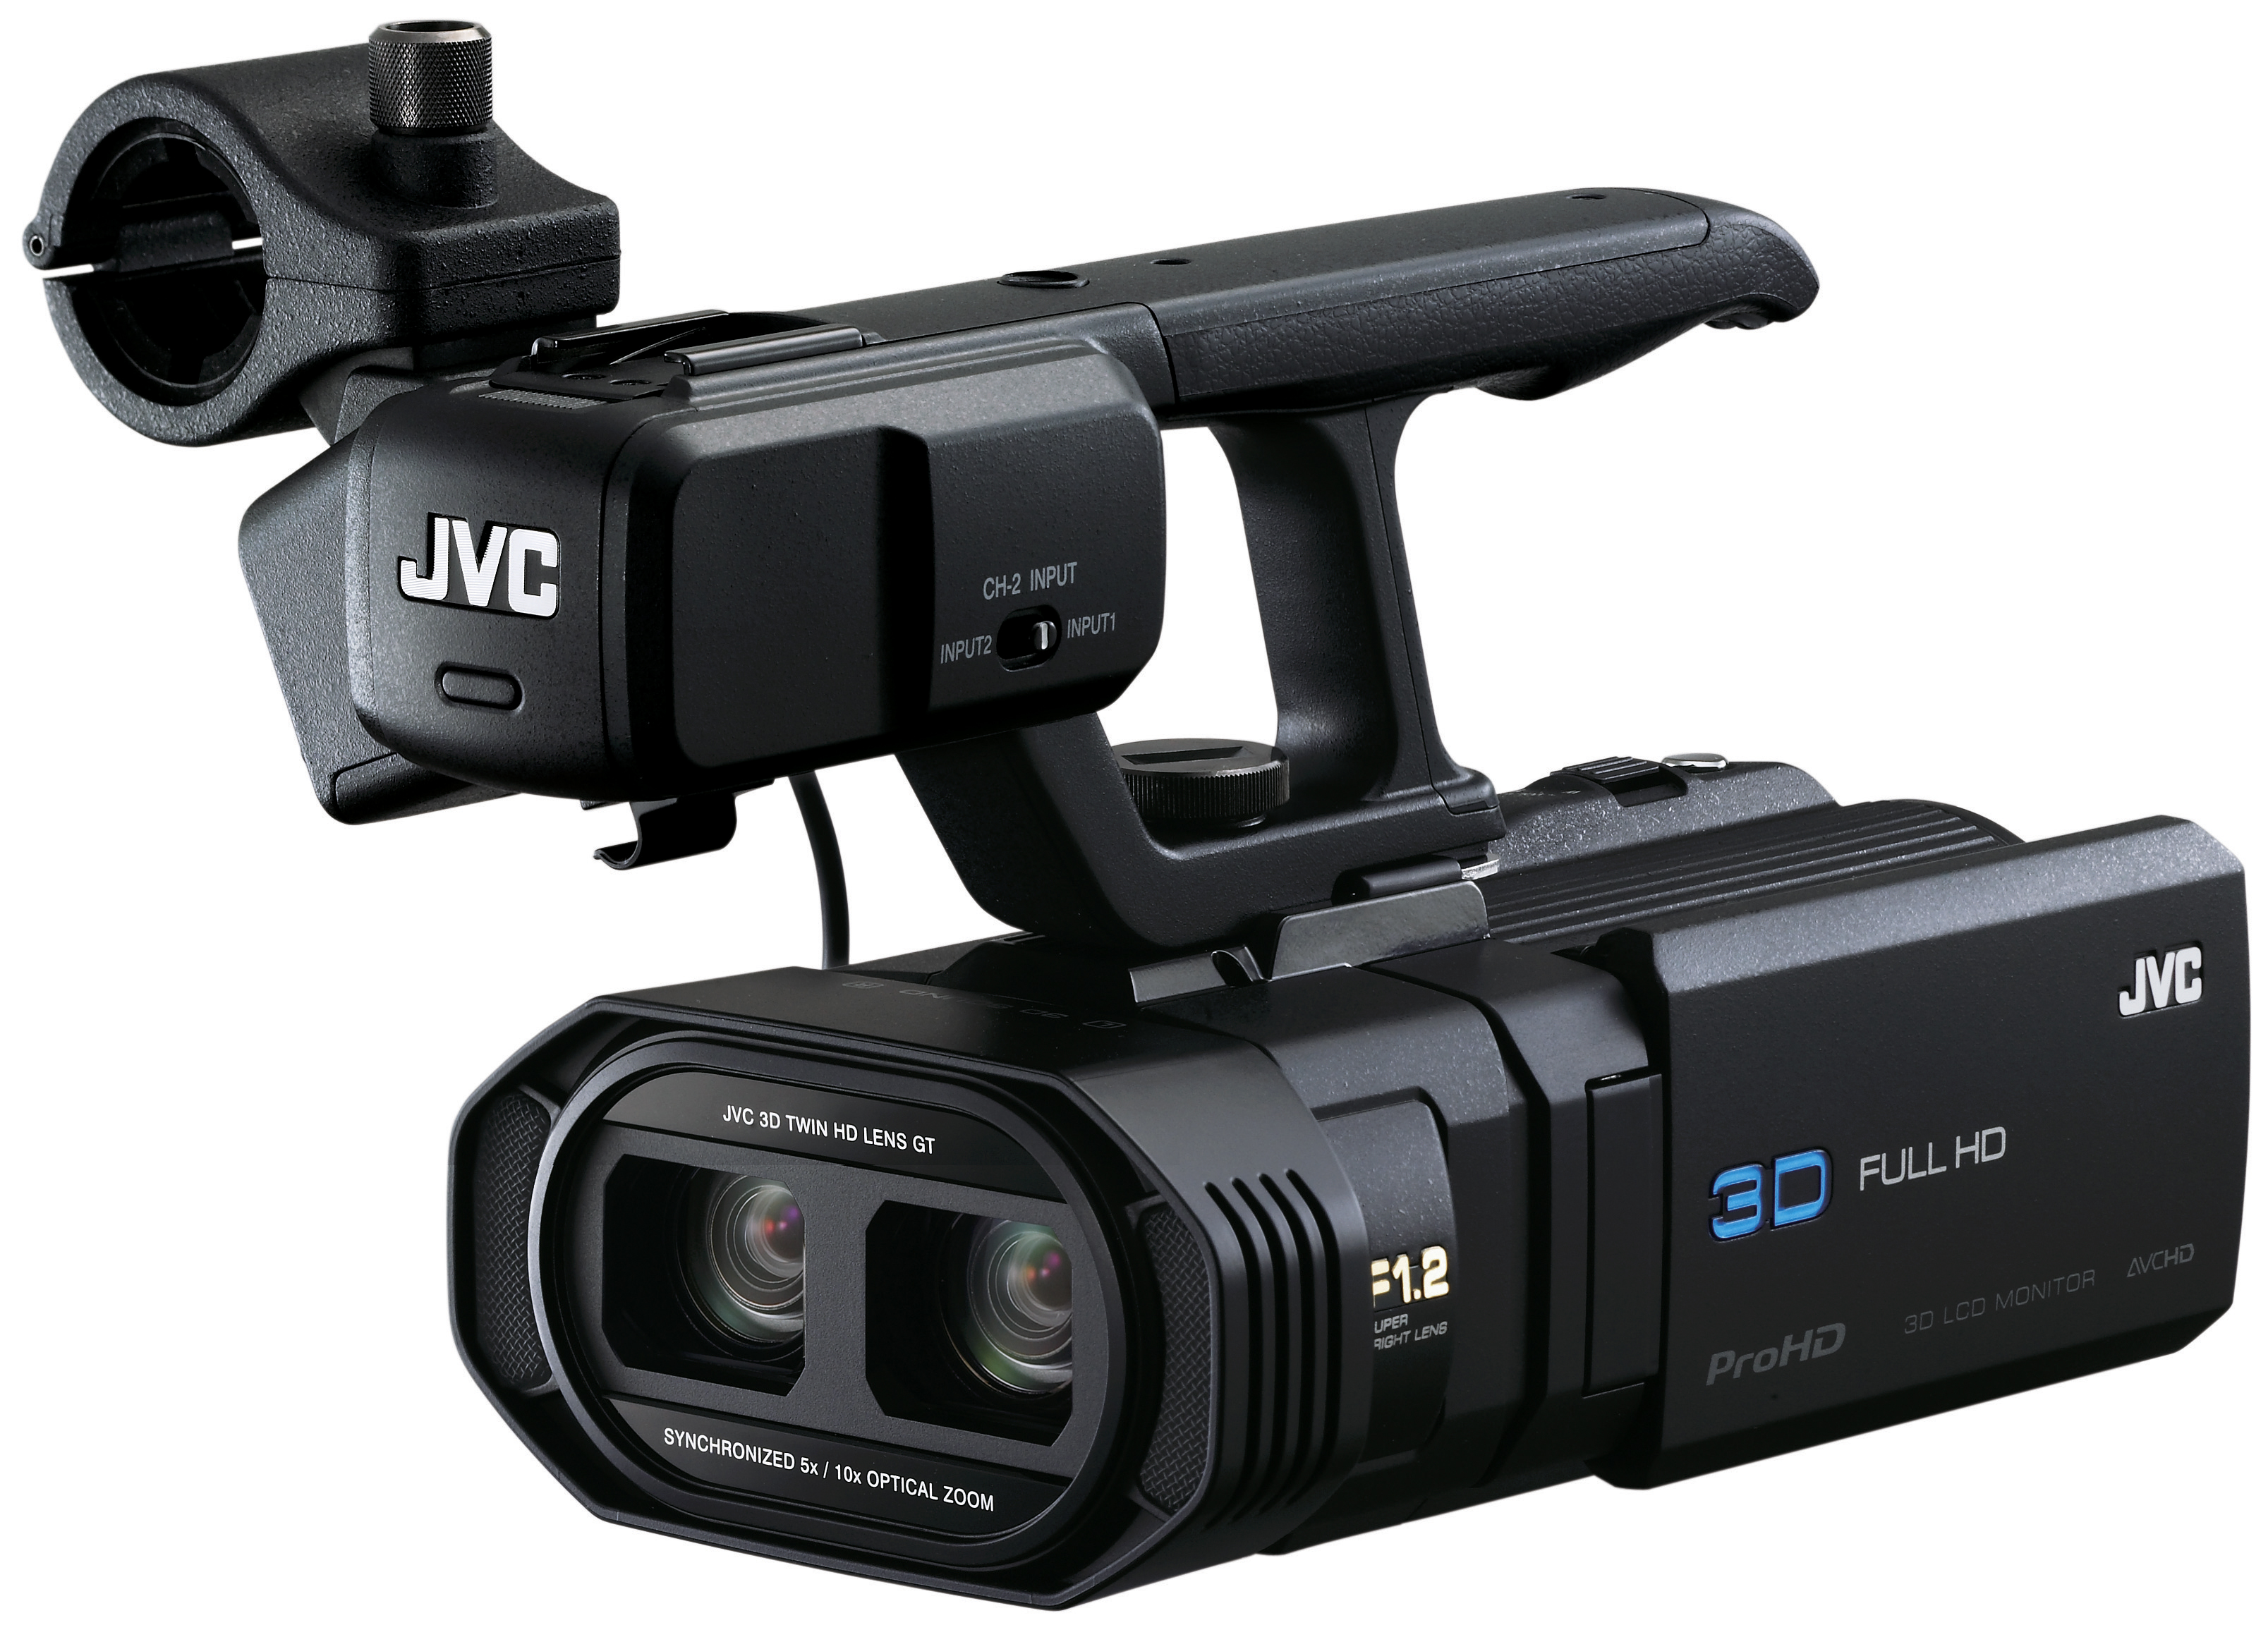 JVC Pro Product Images